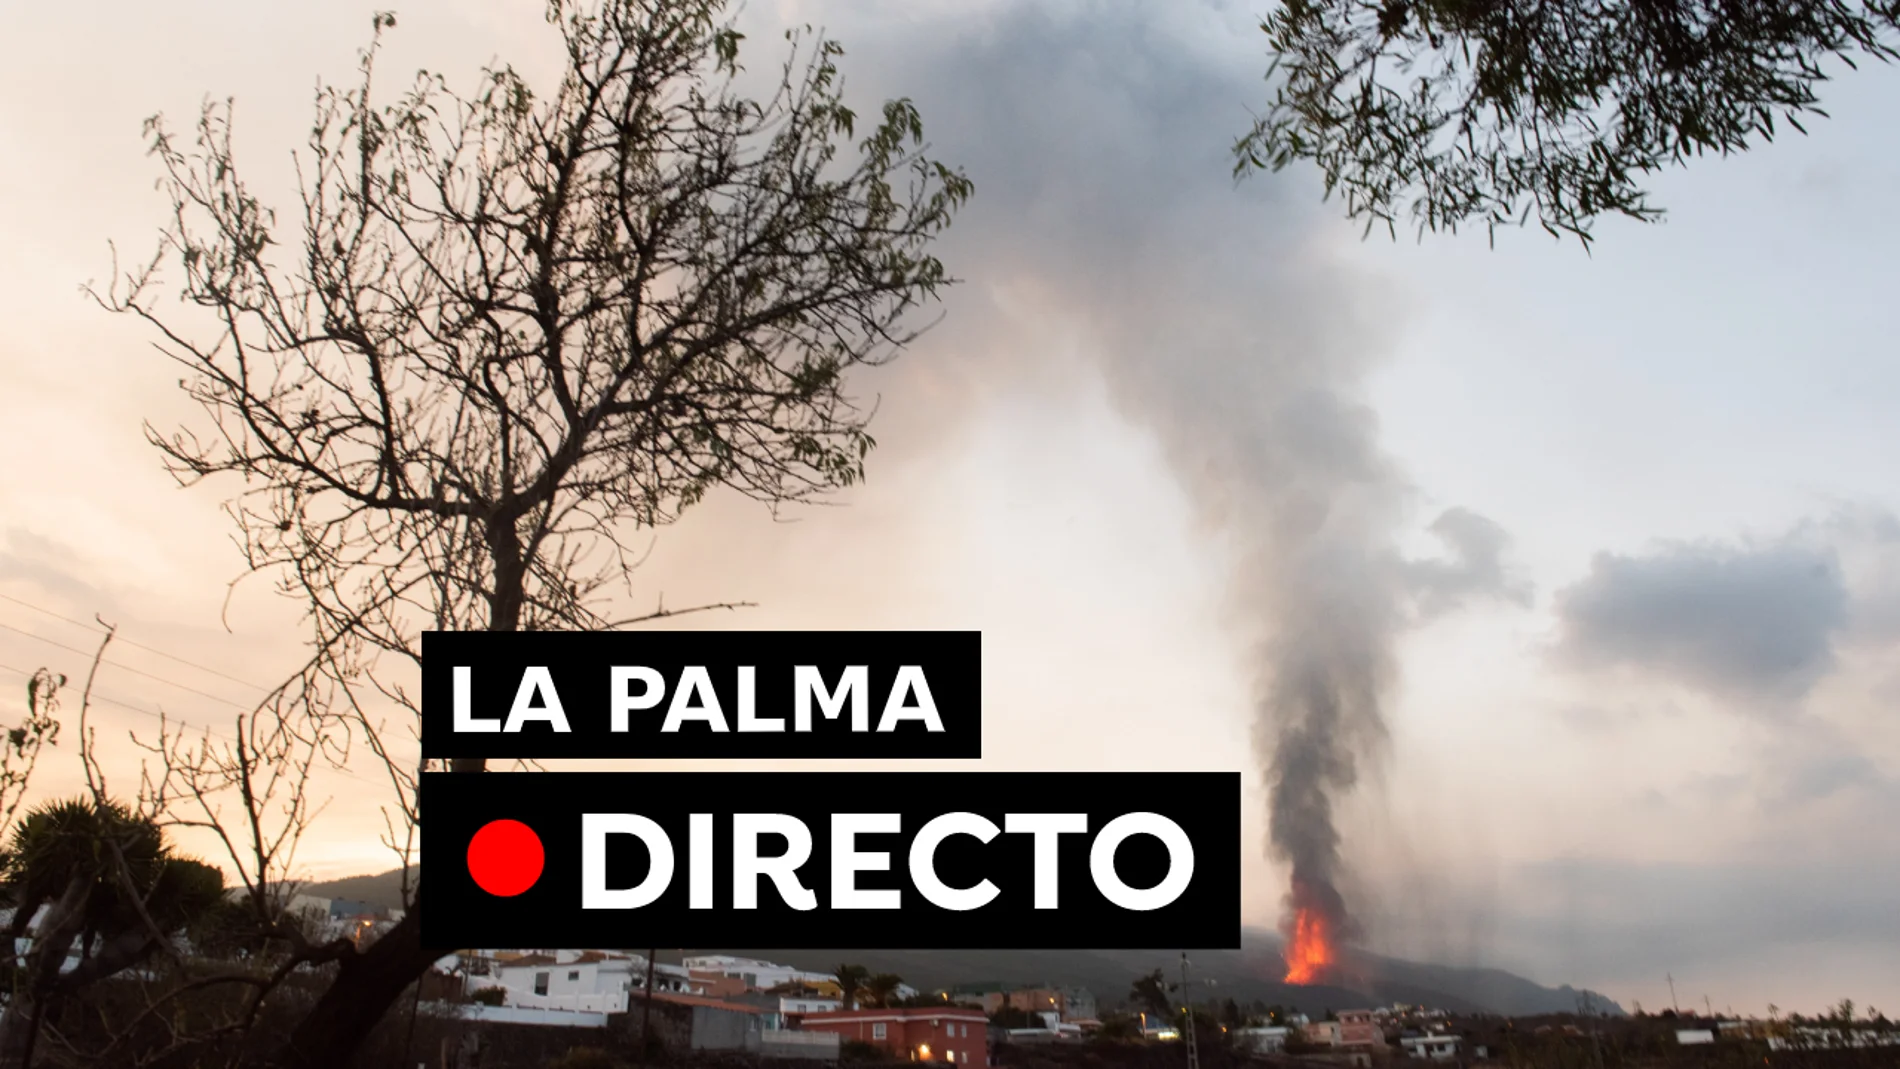 Volcán La Palma: Posibilidades de nube tóxica y lluvia ácida por la erupción de Cumbre Vieja, en directo